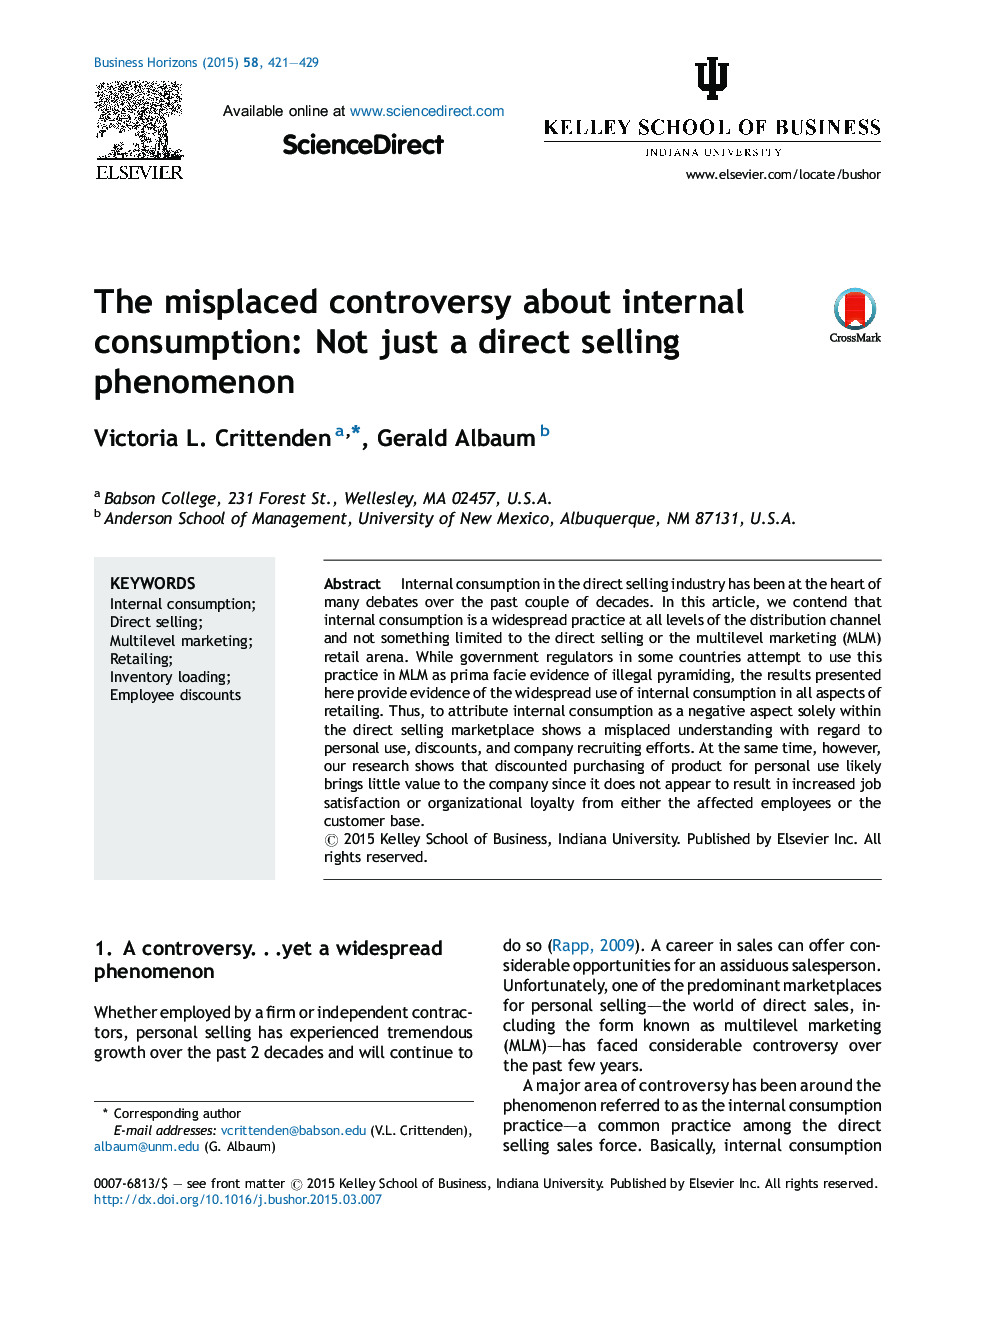 بحث نابجا در مورد مصرف داخلی: نه فقط یک پدیده فروش مستقیم 